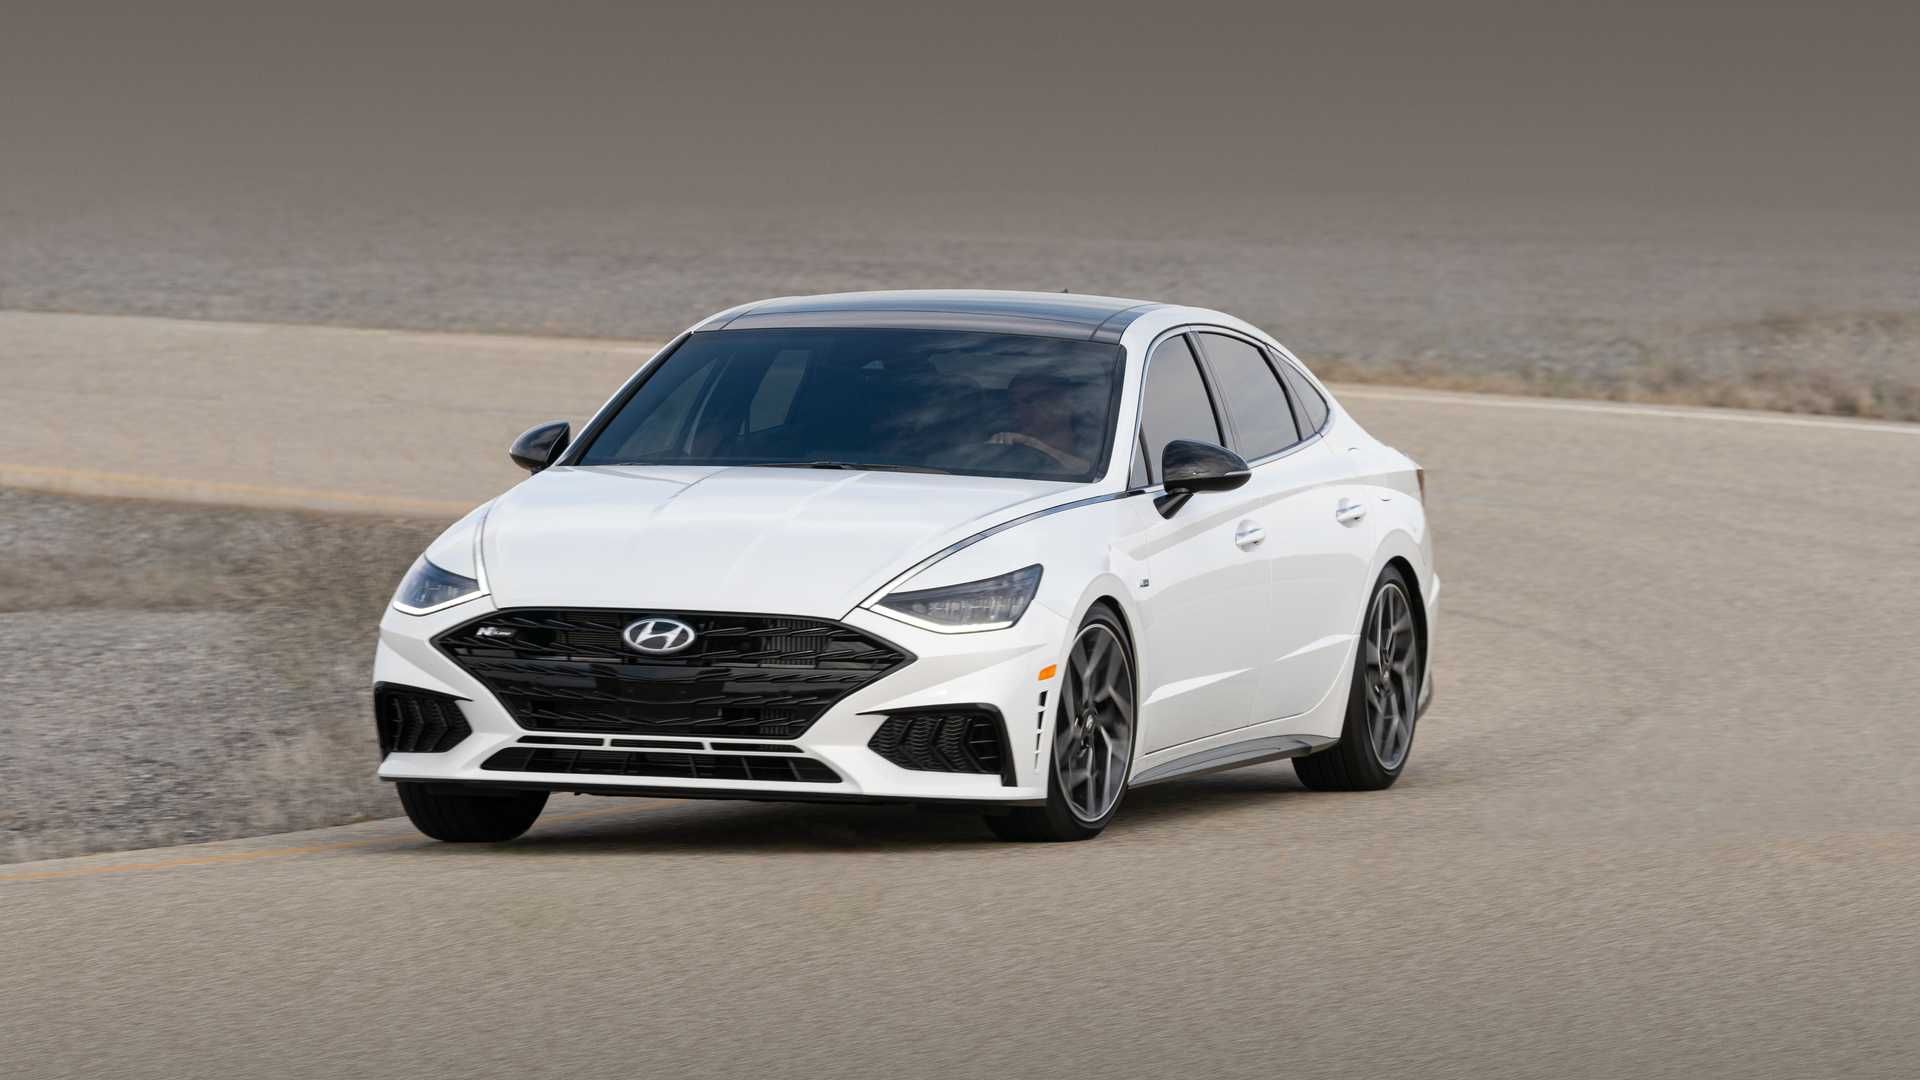 مرجع متخصصين ايران نماي جلو سدان هيونداي سوناتا ان لاين / 2021 Hyundai Sonata N Line سفيد رنگ در جاده